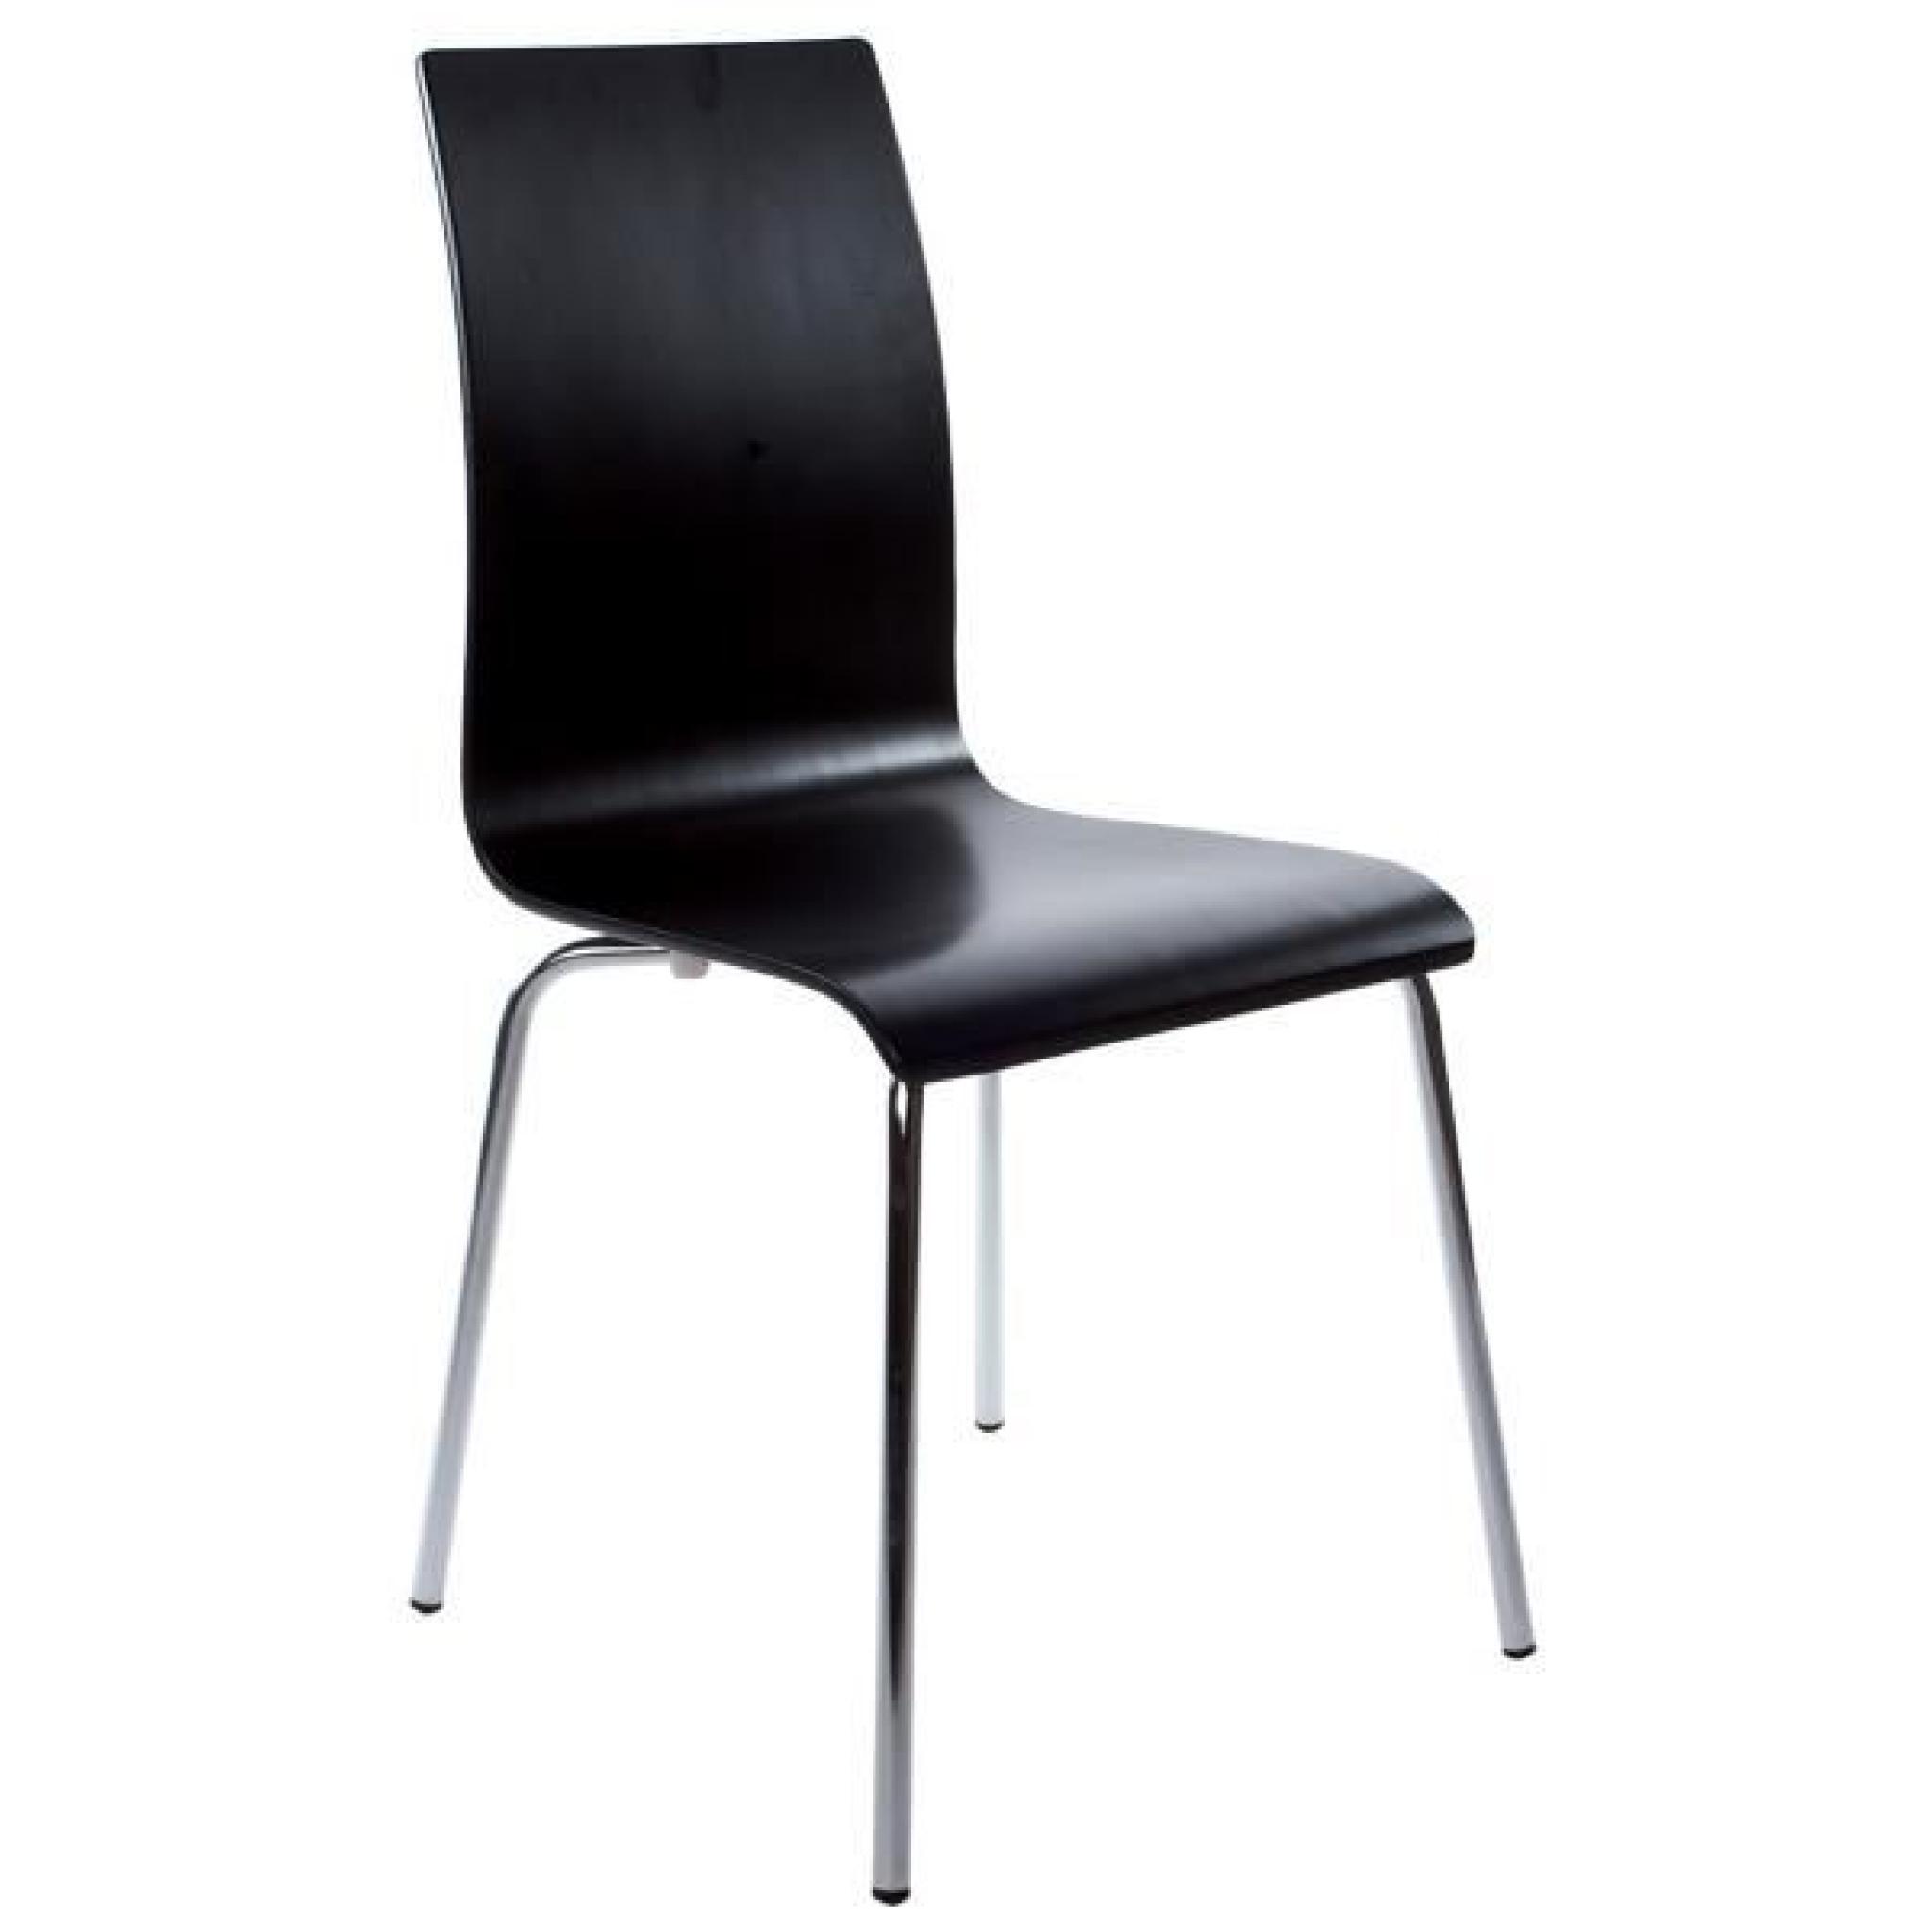 CLASSIC - Chaise de cuisine en bois peint noir